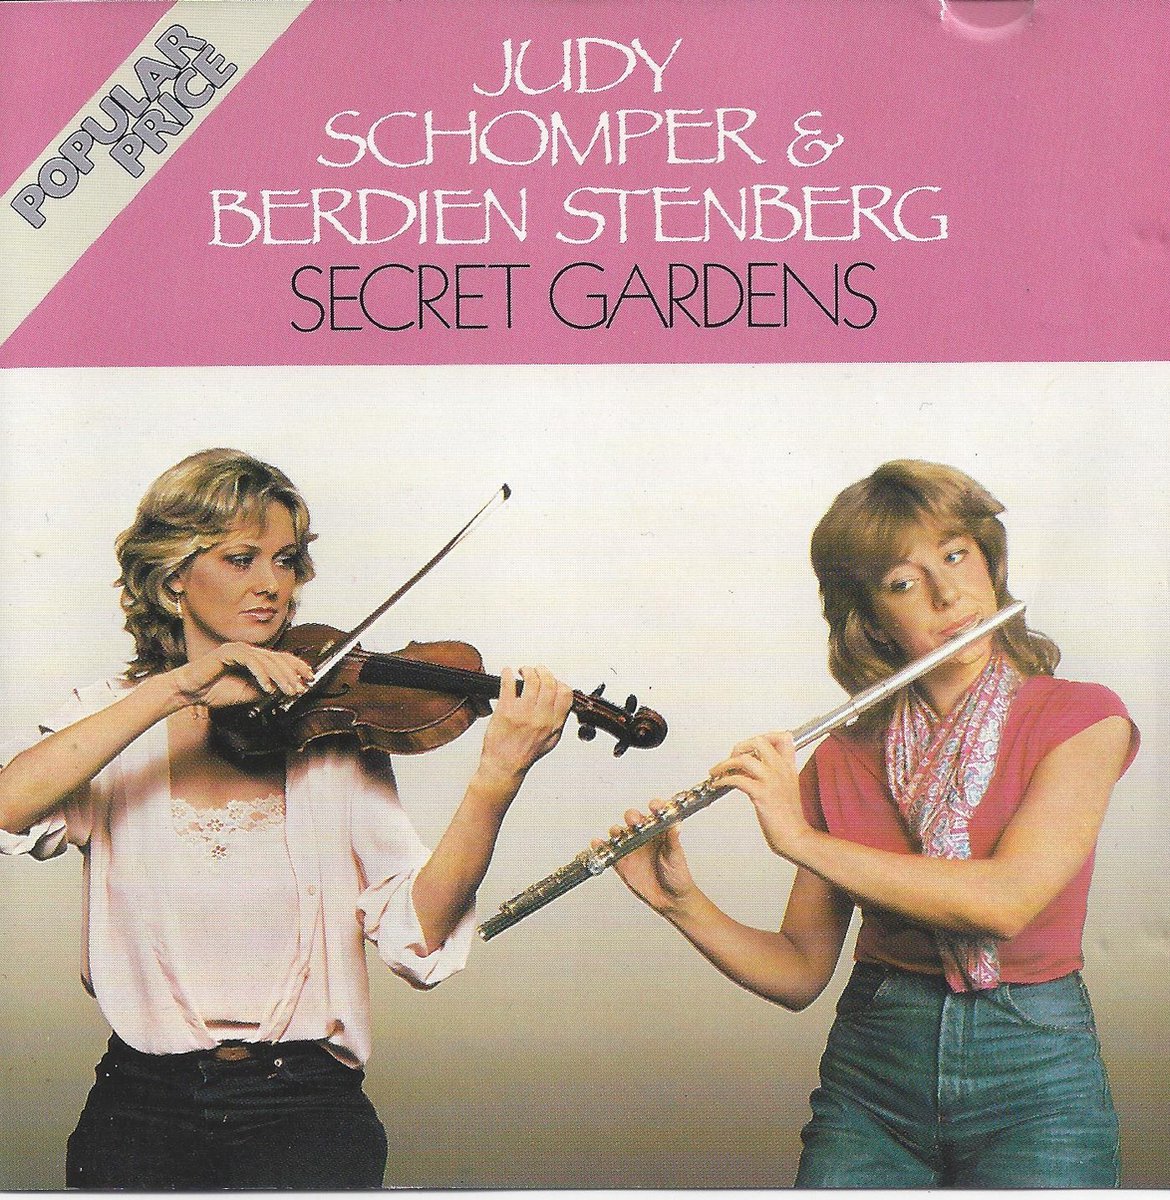 Secret Gardens - Judy Schomper & Berdien Stenberg